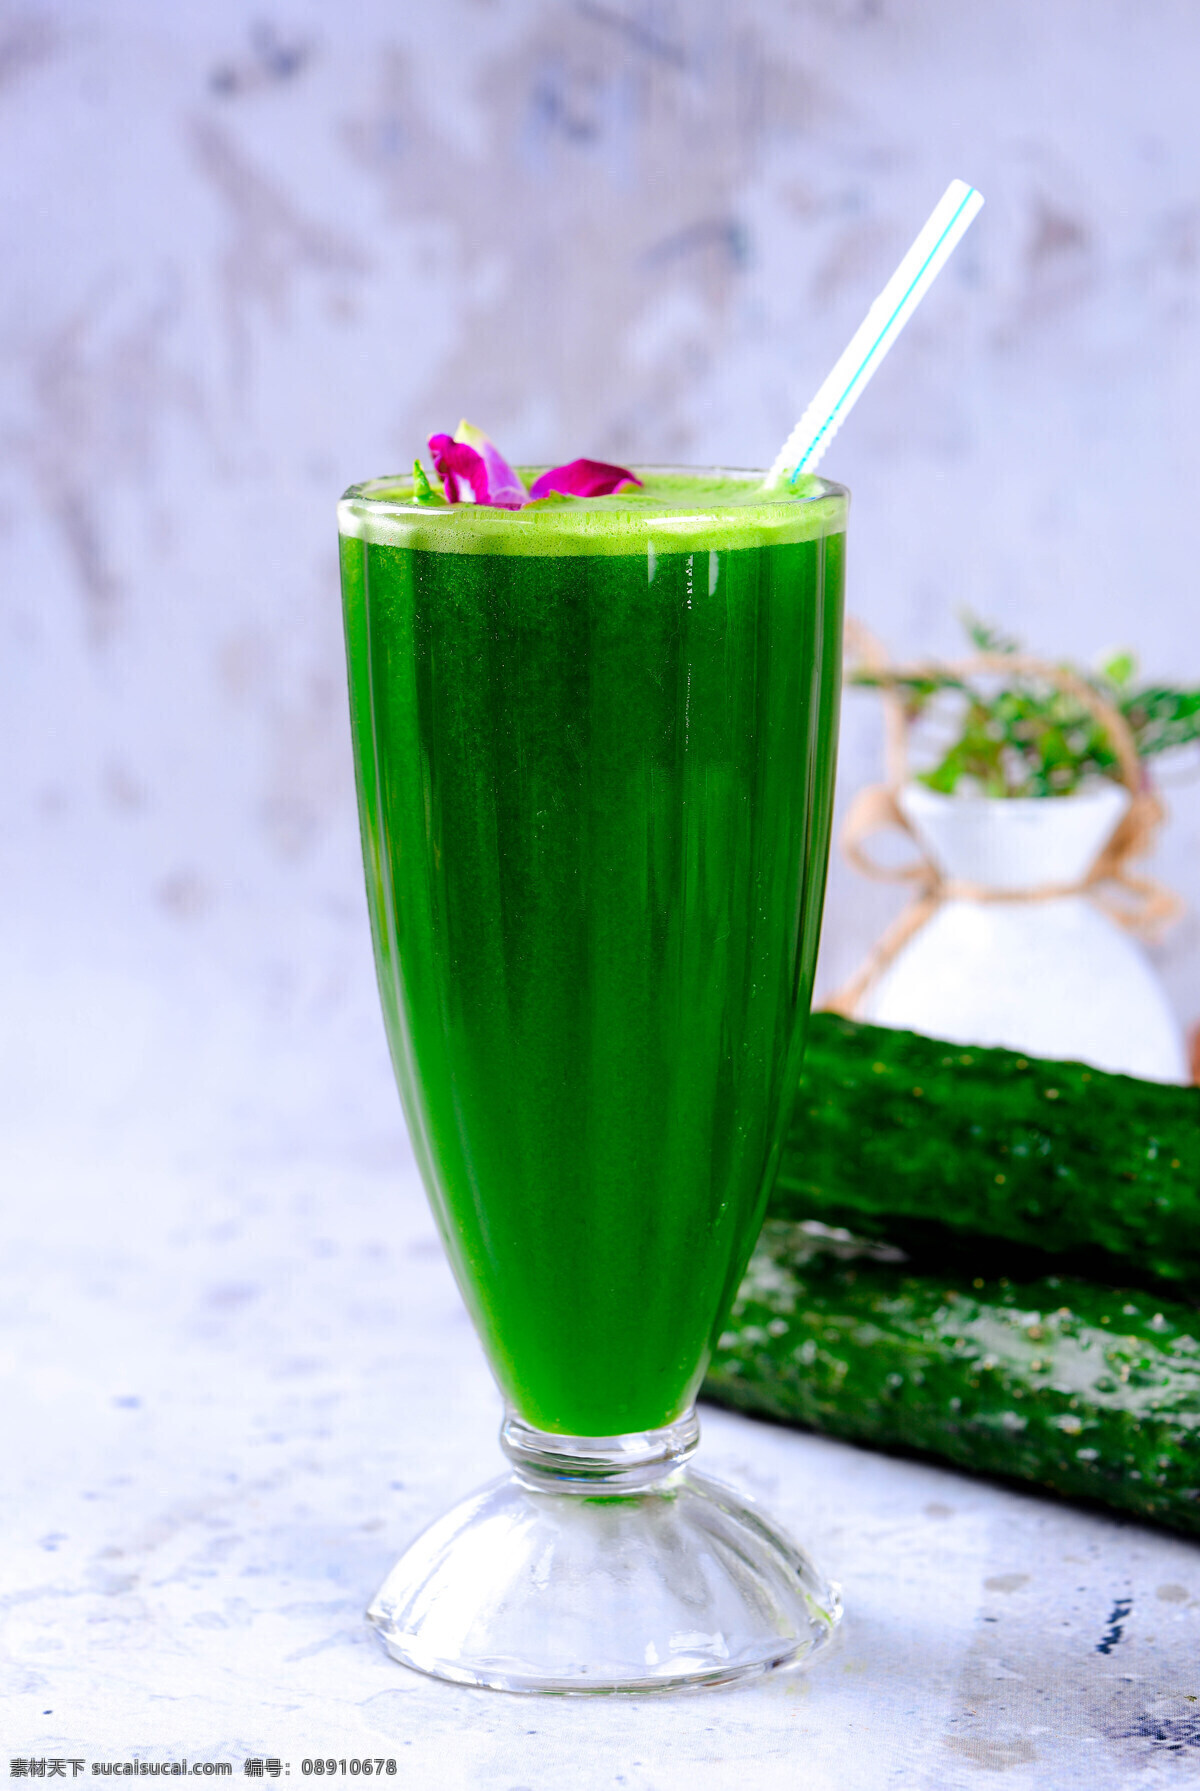 青瓜汁 黄瓜 汁 新鲜 绿色 蔬菜汁 鲜榨 鲜榨黄瓜汁 餐饮美食 饮料酒水